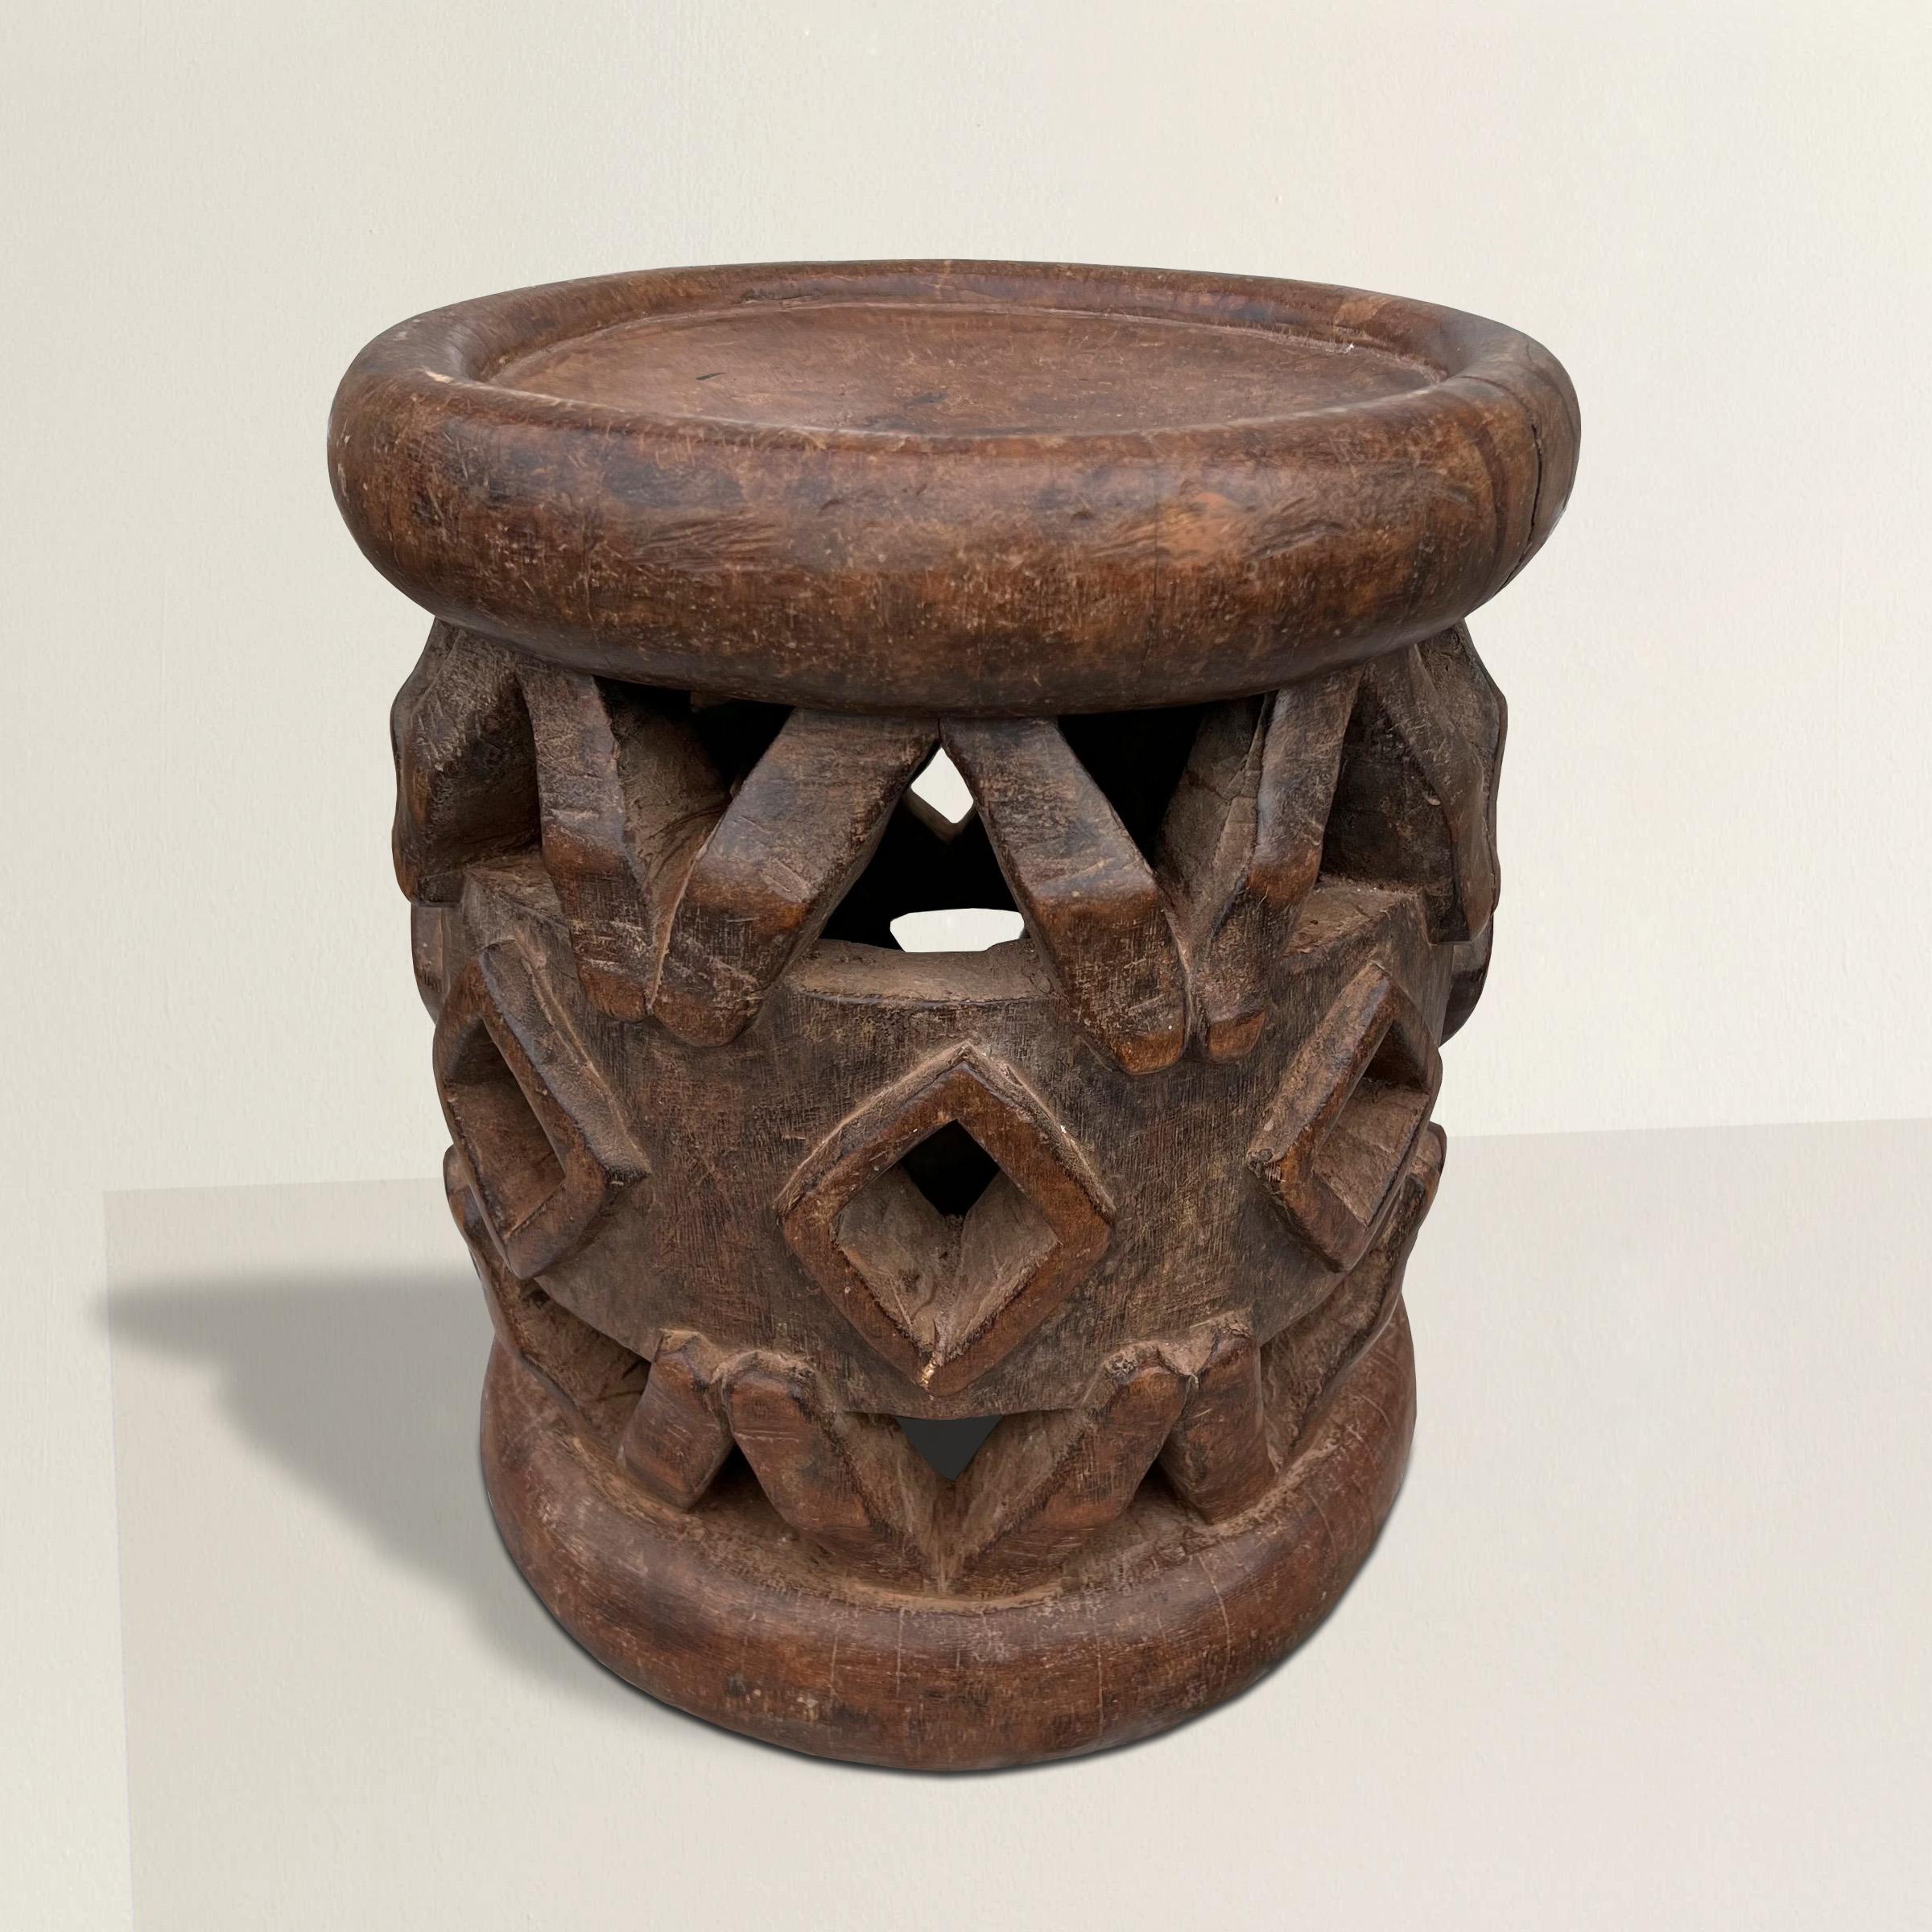 Un remarquable tabouret Bamileke du début du 20e siècle, sculpté à la main dans une seule pièce de bois avec un merveilleux motif géométrique, et avec la plus belle patine que seul le temps peut conférer. Le tabouret peut également faire office de